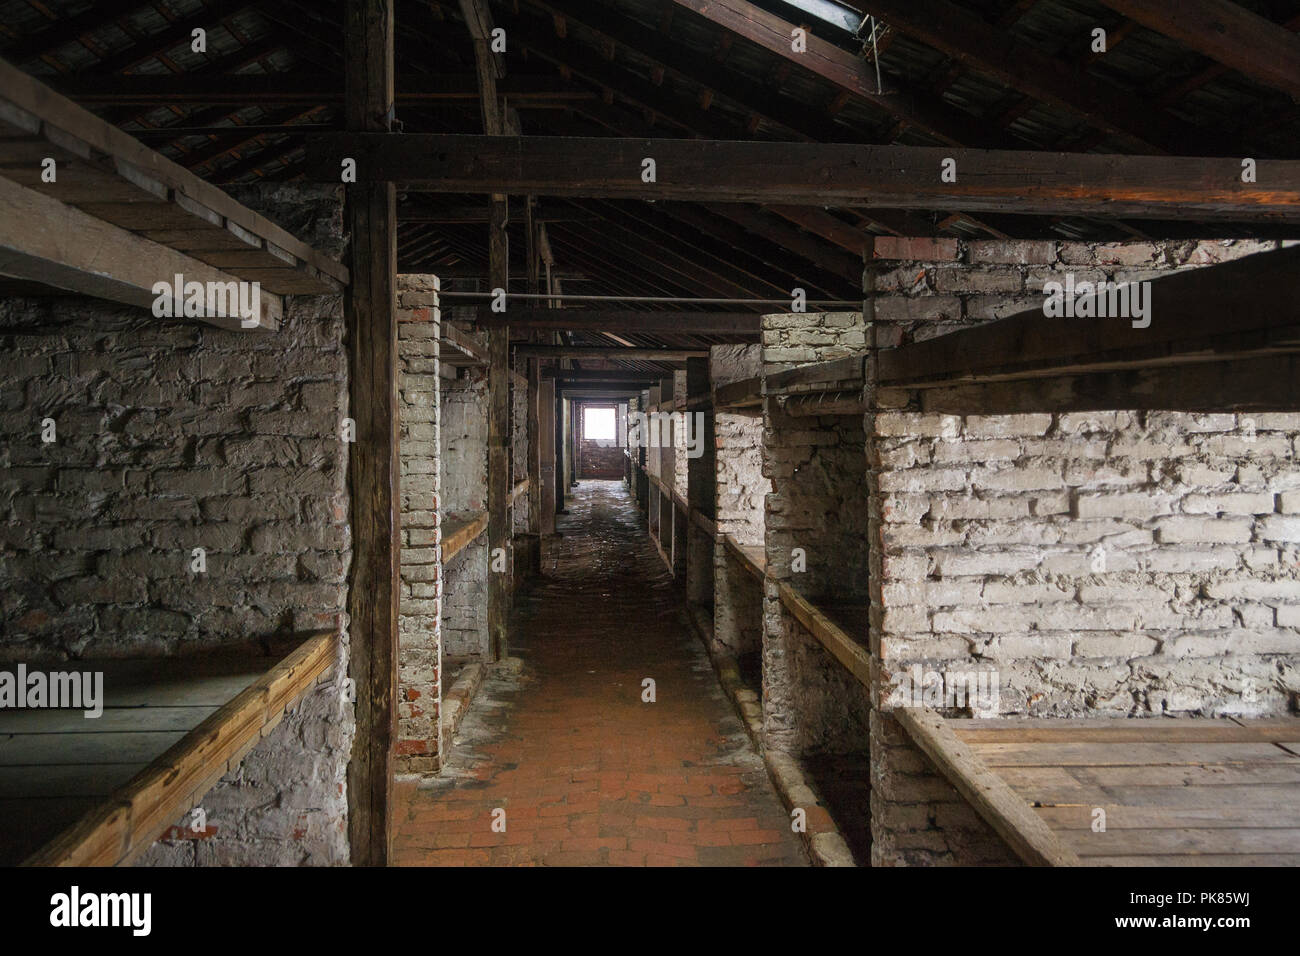 Auschwitz, Pologne - 16 Février 2018 : Intérieur de la Caserne du Camp de concentration d'Auschwitz Birkenau Banque D'Images